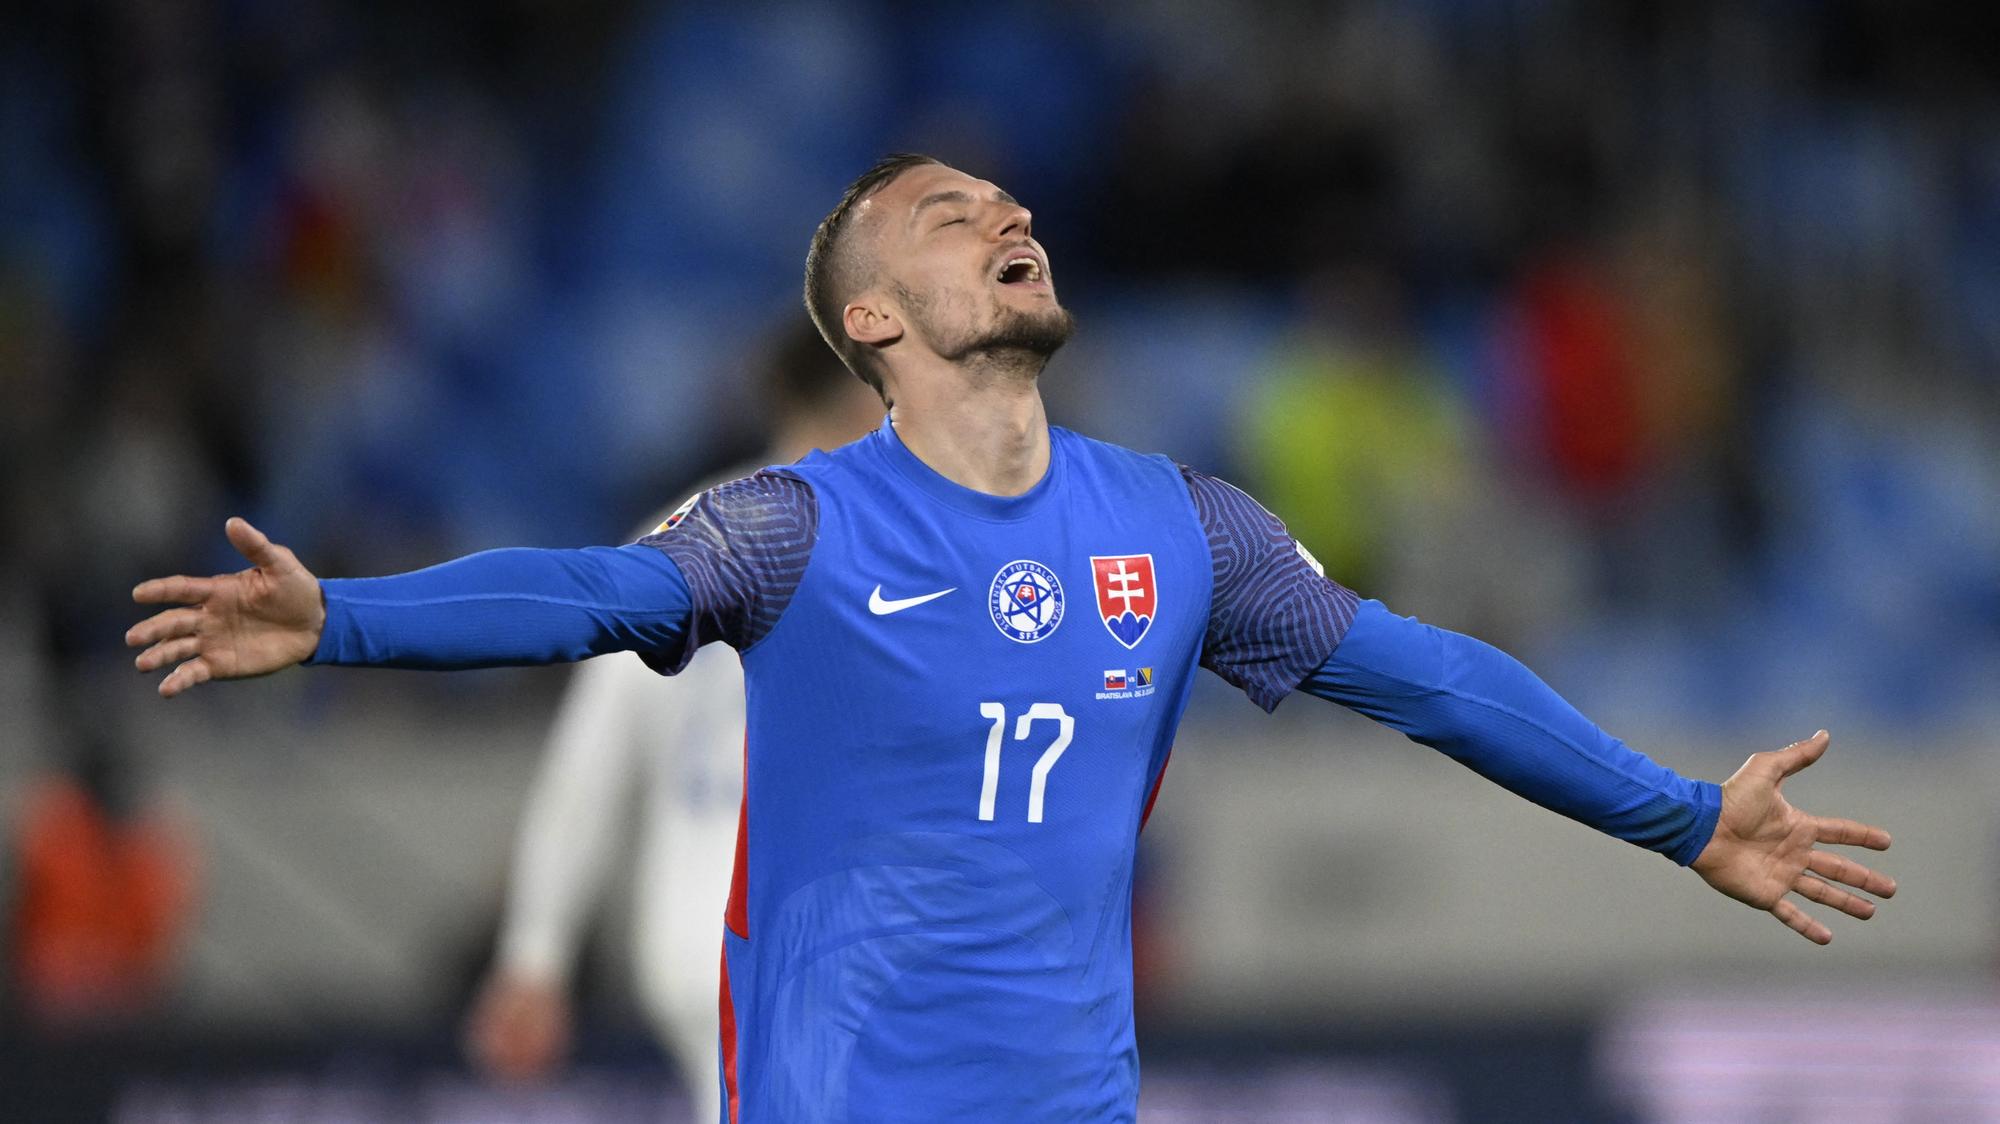 Reakcie na víťazstvo: Dokázali sme, že vieme bojovať za Slovensko | Šport.sk